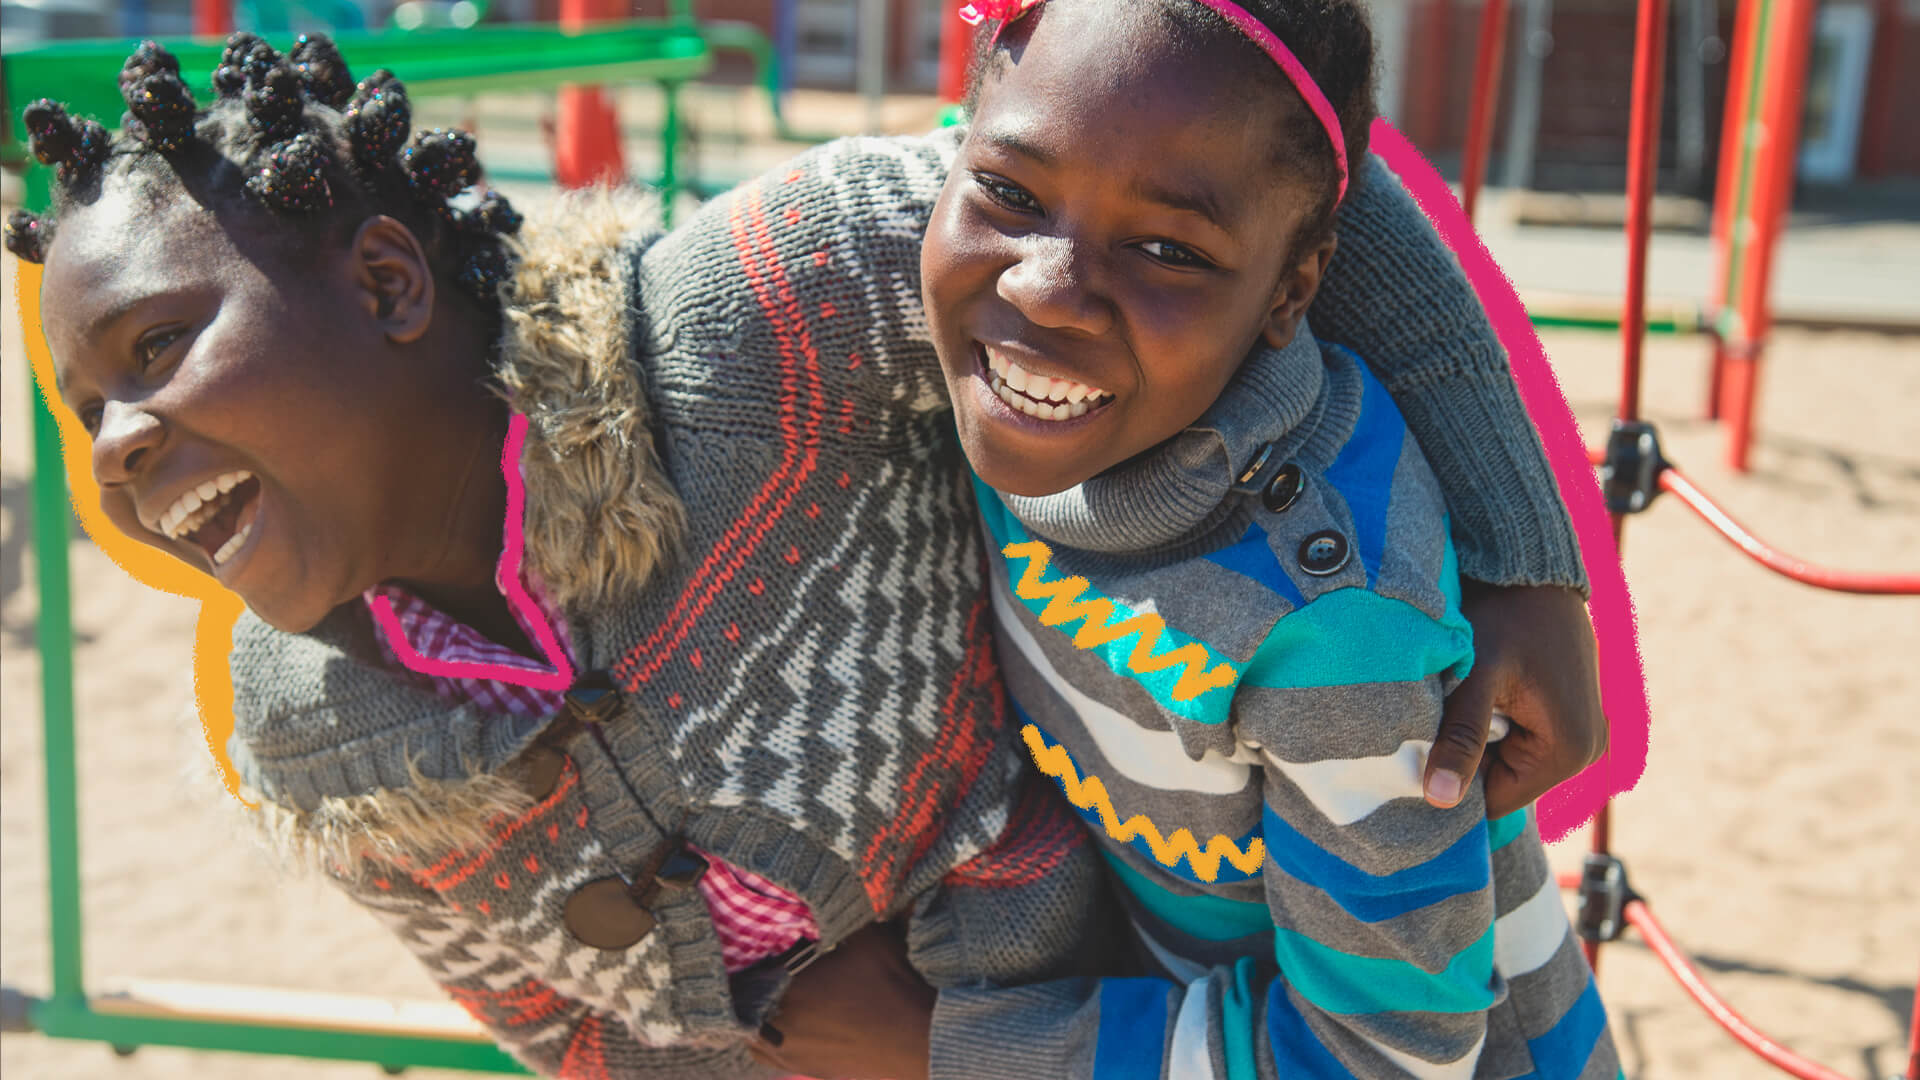 As brincadeiras africanas de Weza: na foto, duas meninas negras brincam em um parquinho. Elas sorriem e usam suéteres coloridos com fundo cinza.